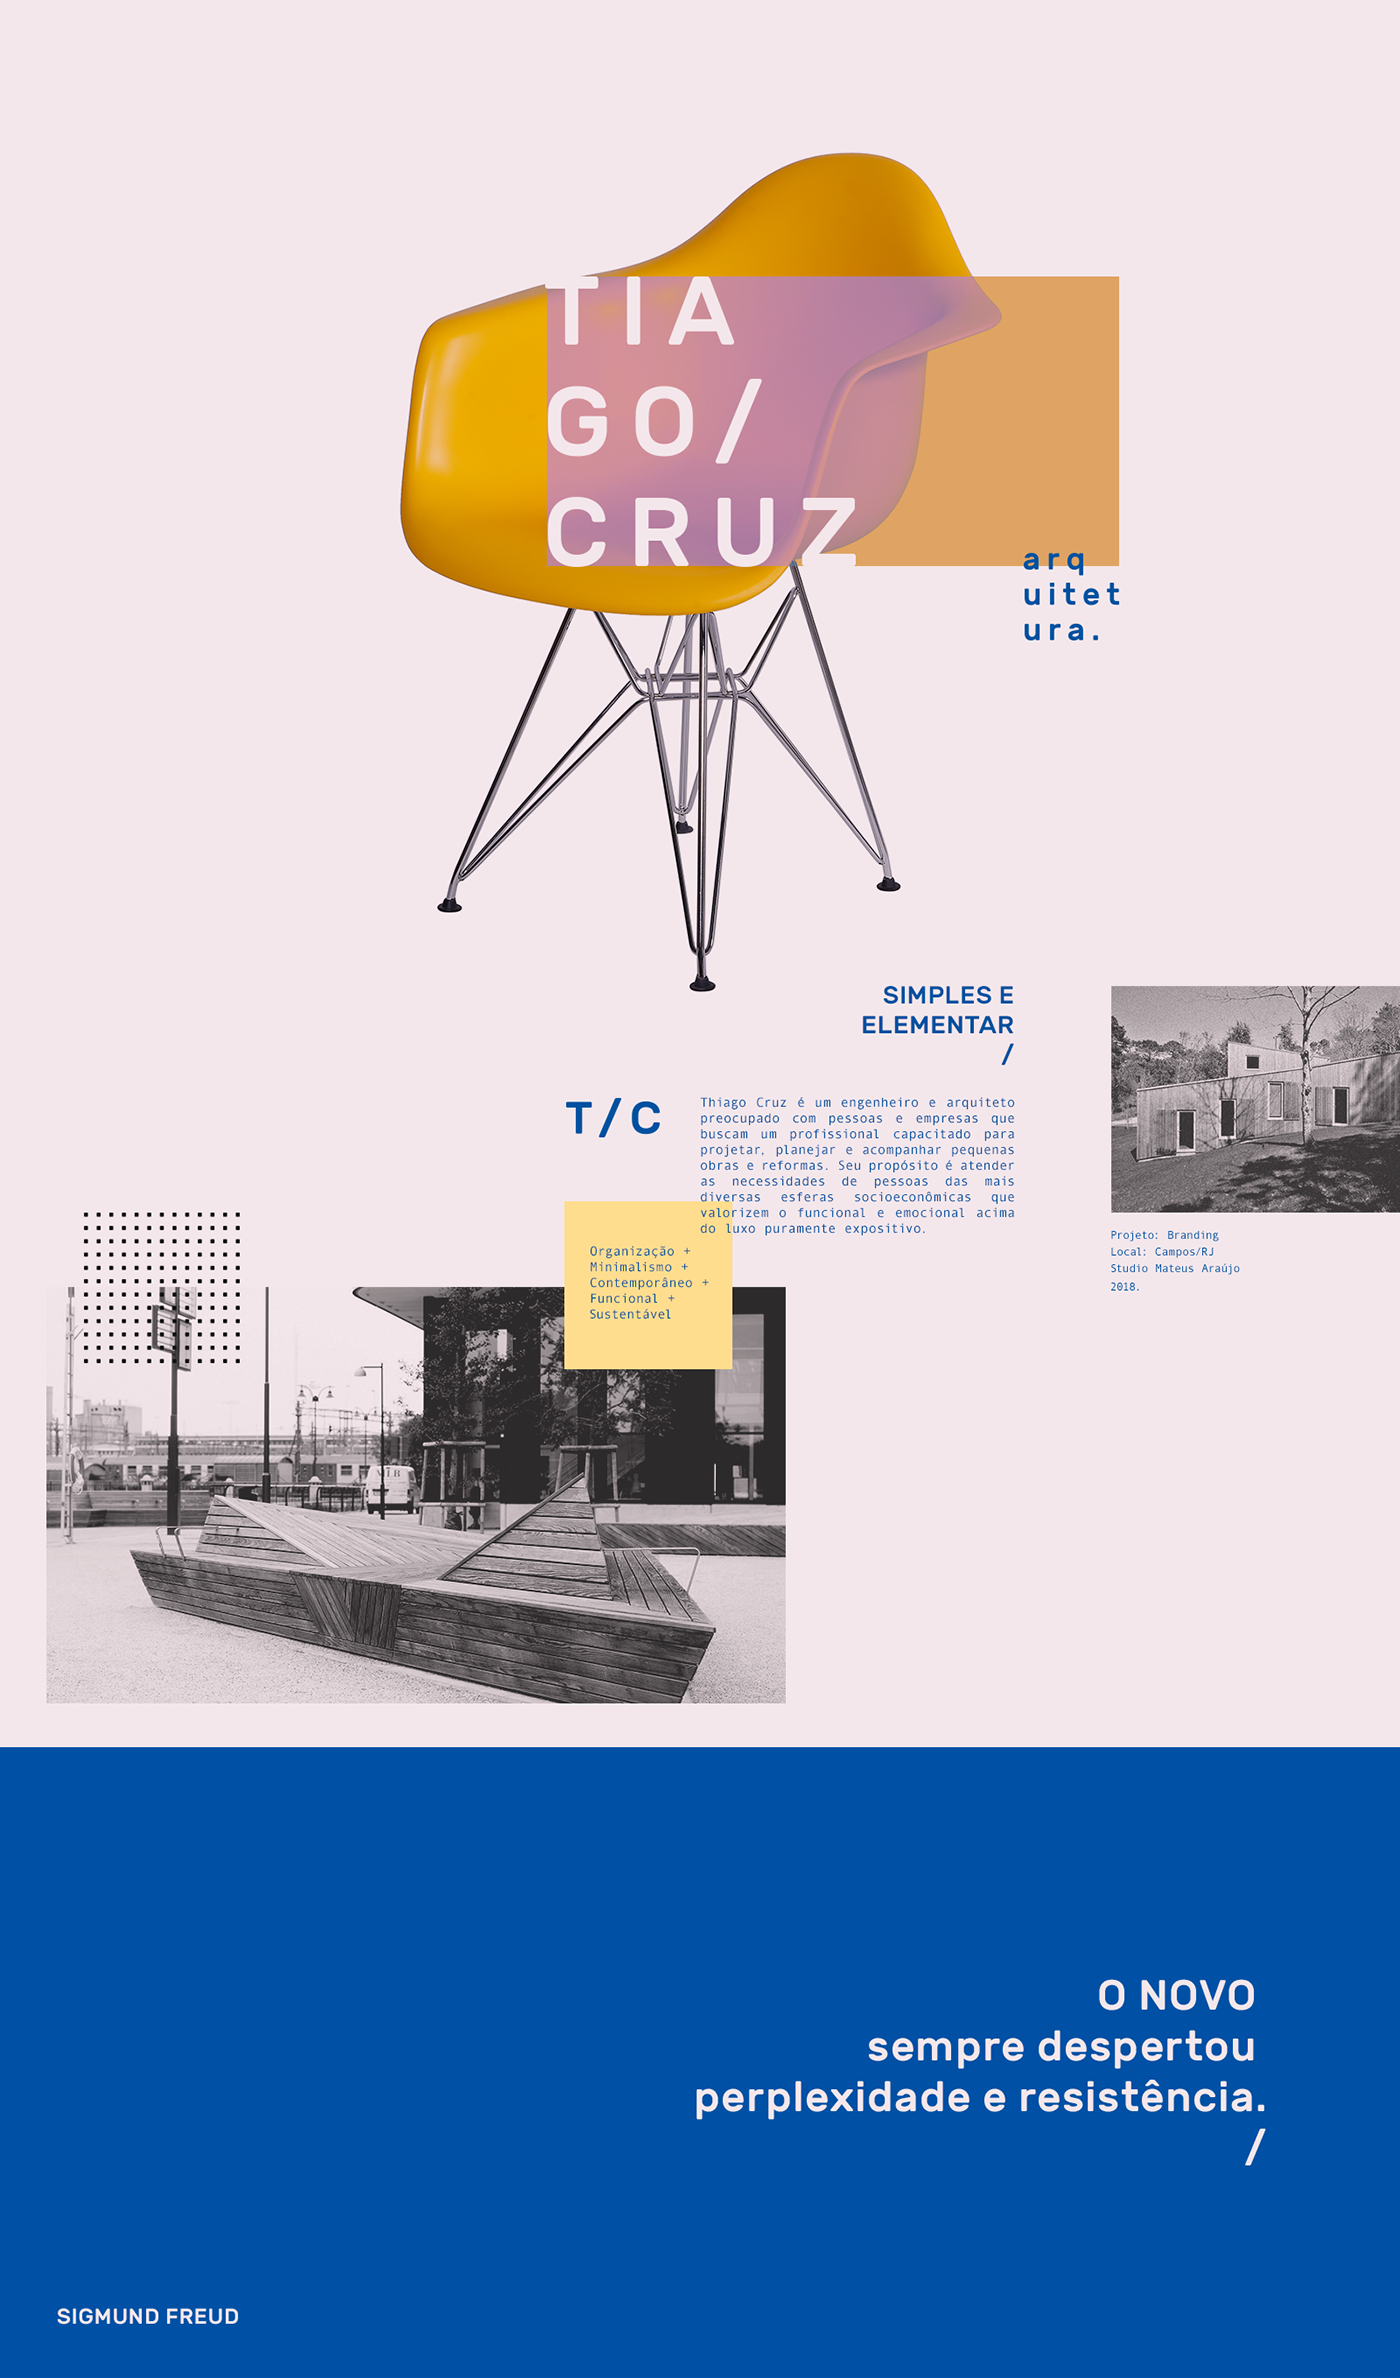 Tiago Cruz ARQUITETURA architecture interior design  interiores branding  logo visual identity contemporary Engineering 